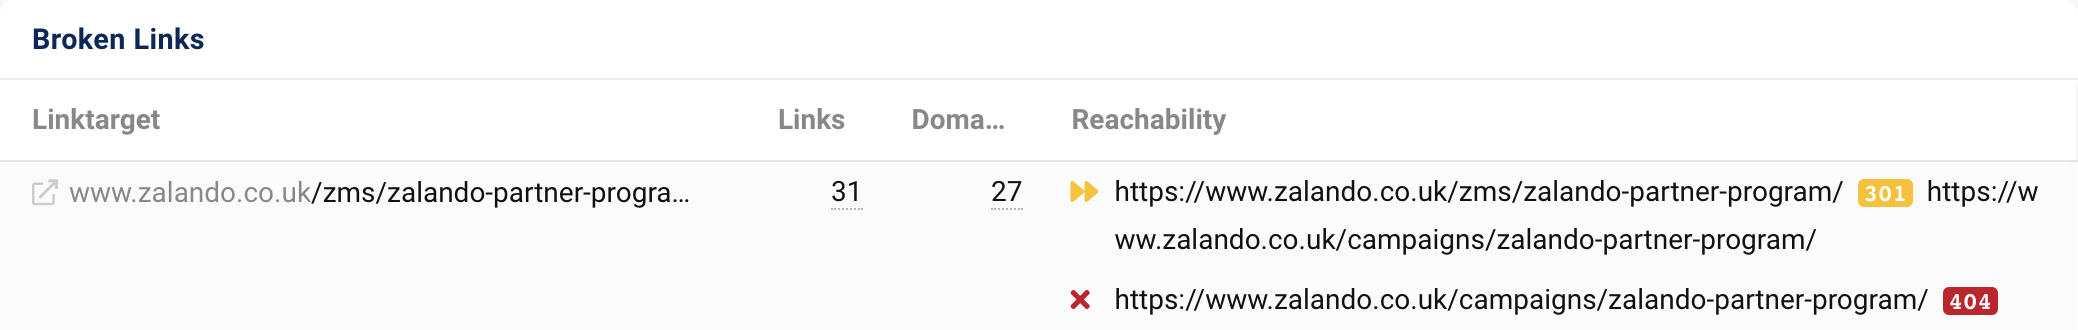 Das Linkziel zalando.co.uk/zms/zalando-partner-program/ erhält 31 Links von 27 Domains. Nach einer 301-Weiterleitung gibt die URL einen 404-Statuscode aus.